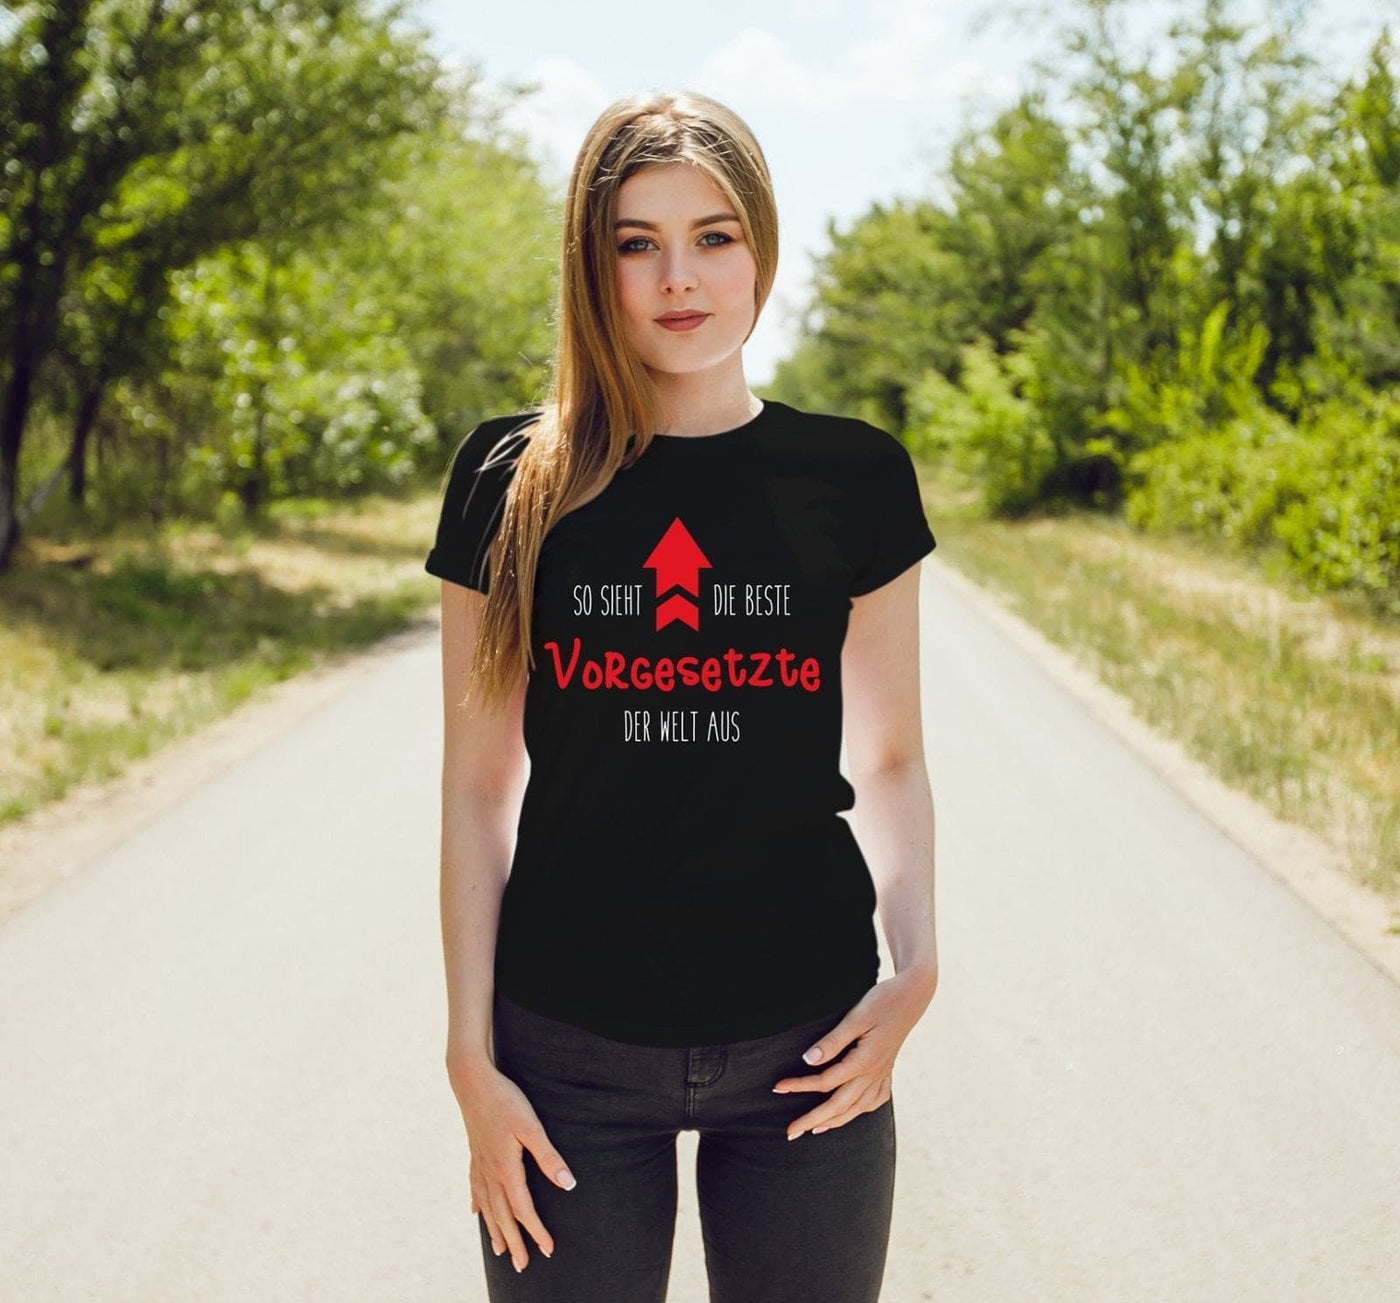 Bild: T-Shirt Damen - So sieht die beste Vorgesetzte der Welt aus Geschenkidee